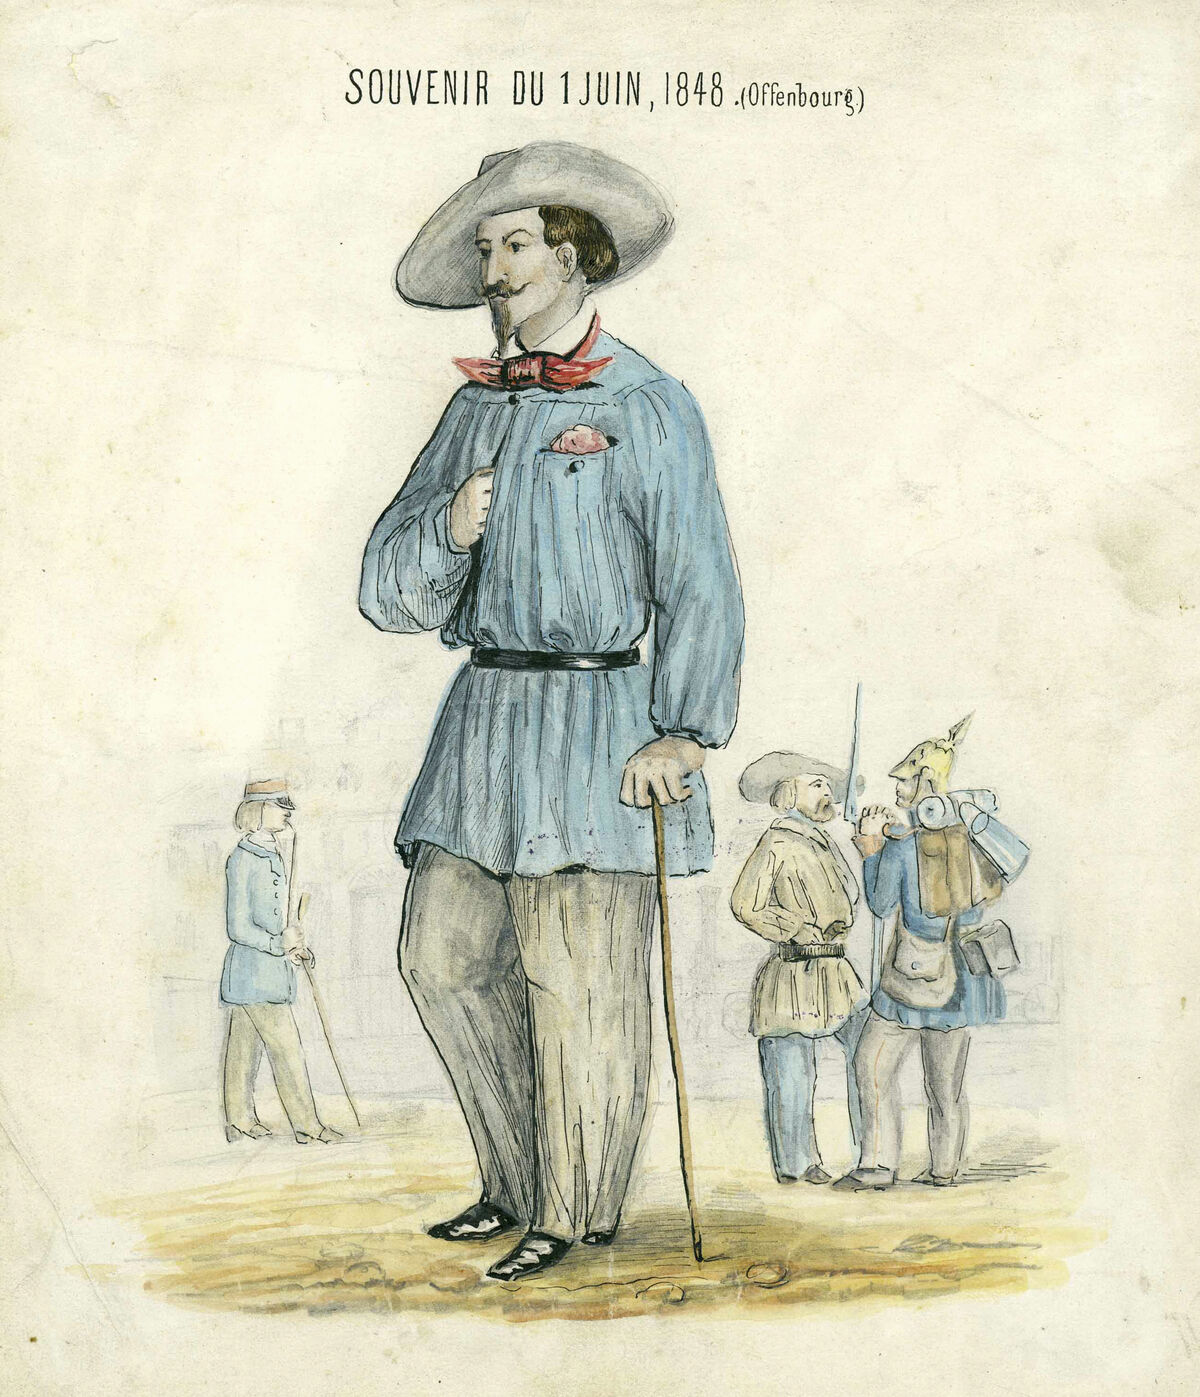 GFD 3/32: Revolutionär Friedrich Hecker mit Hut (Zeichner unbekannt, 1848)